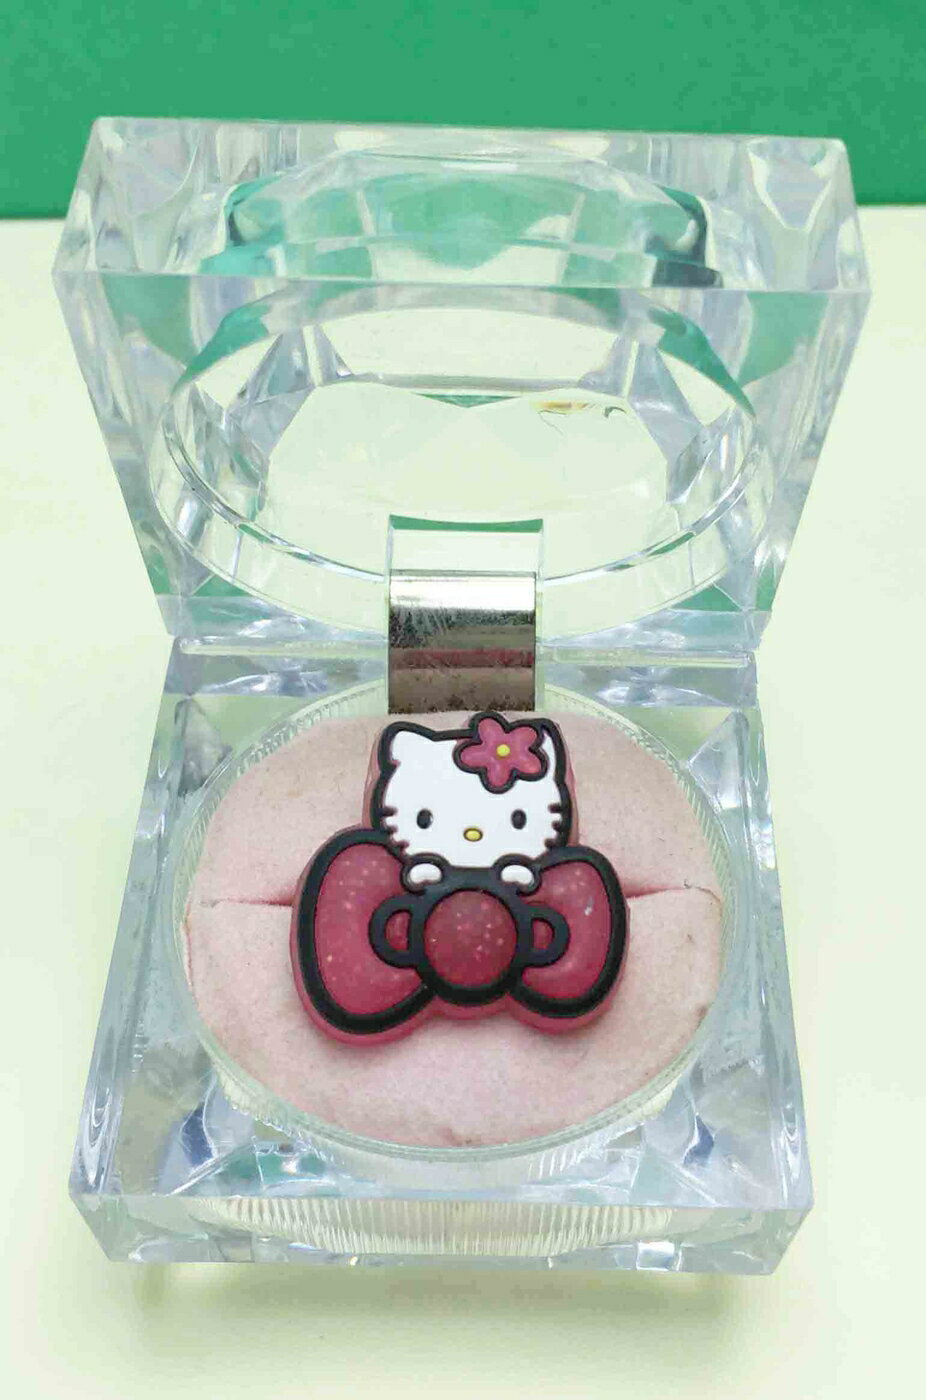 【震撼精品百貨】Hello Kitty 凱蒂貓 軟戒指-粉蝶結 震撼日式精品百貨